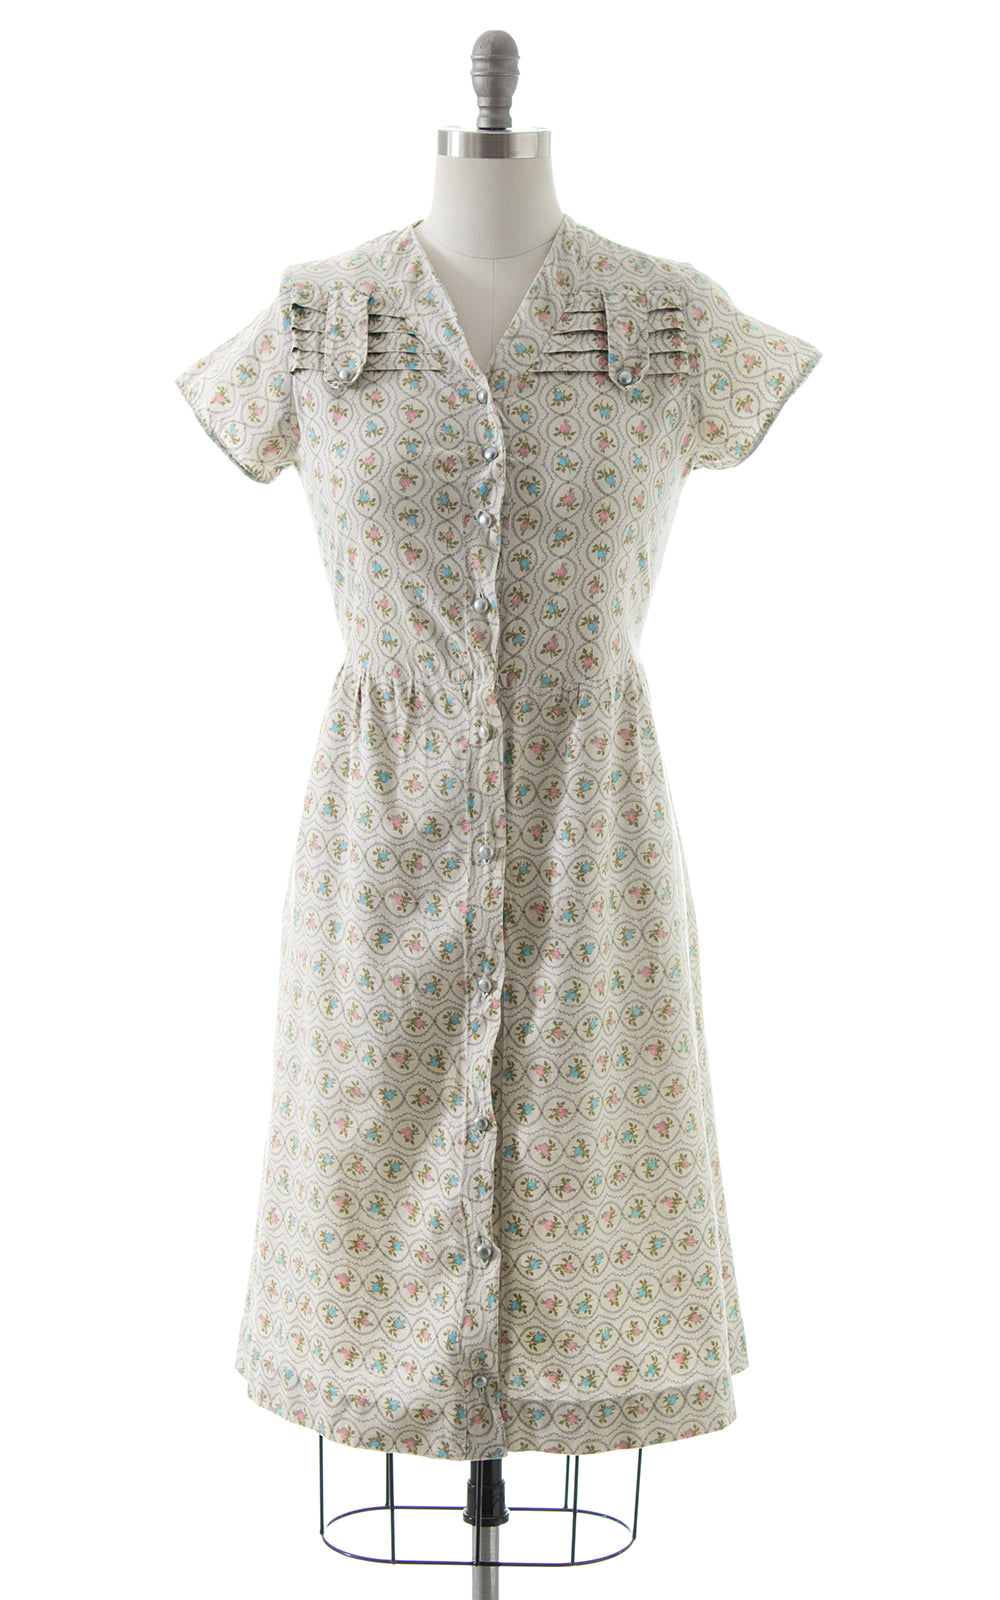 1940s Rosette Shirtwaist Dress